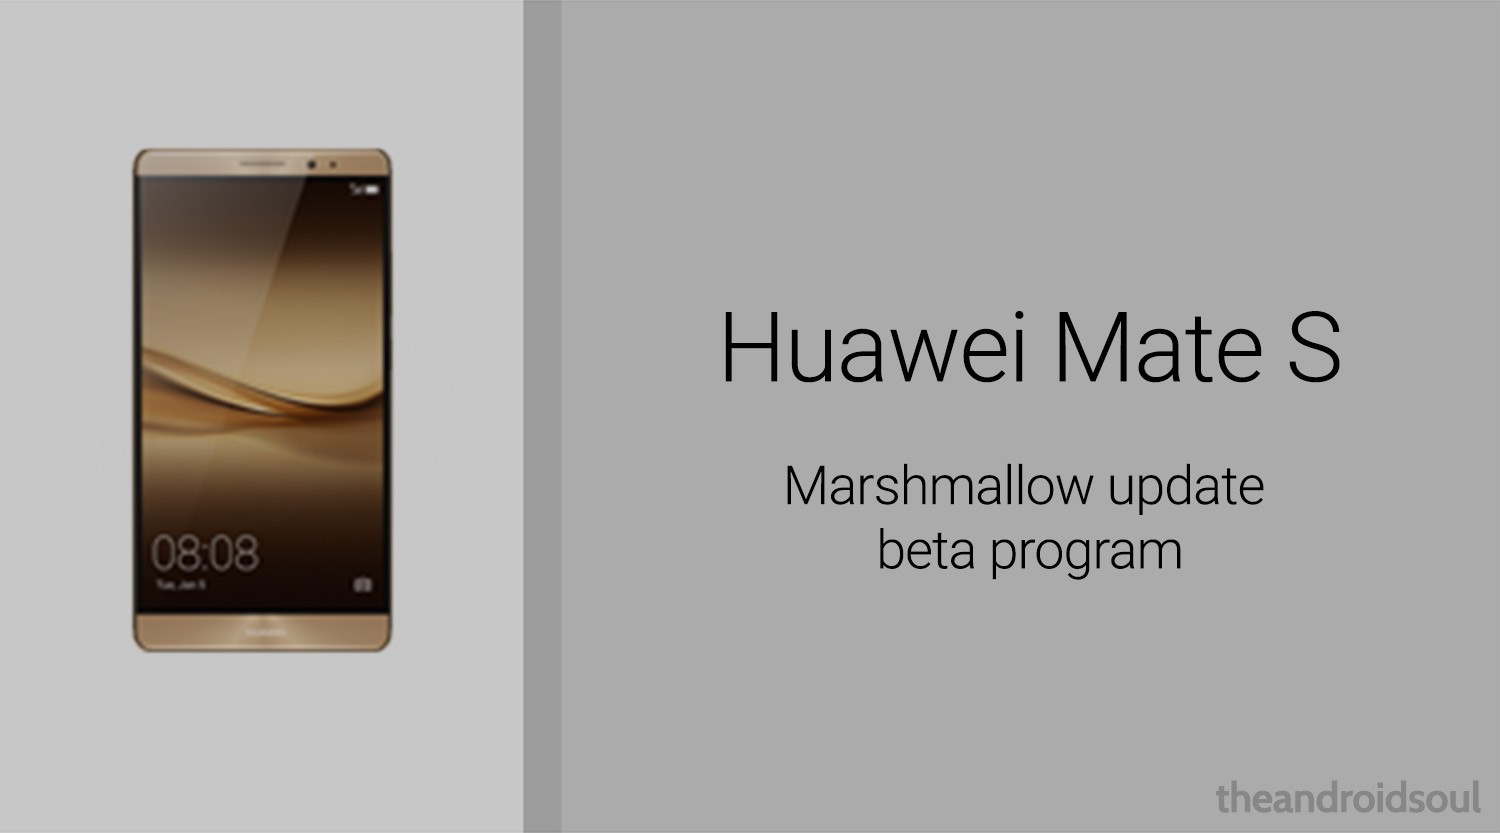 Huawei Mate S recibirá pronto la actualización de Android 6.0 Marshmallow bajo el programa beta